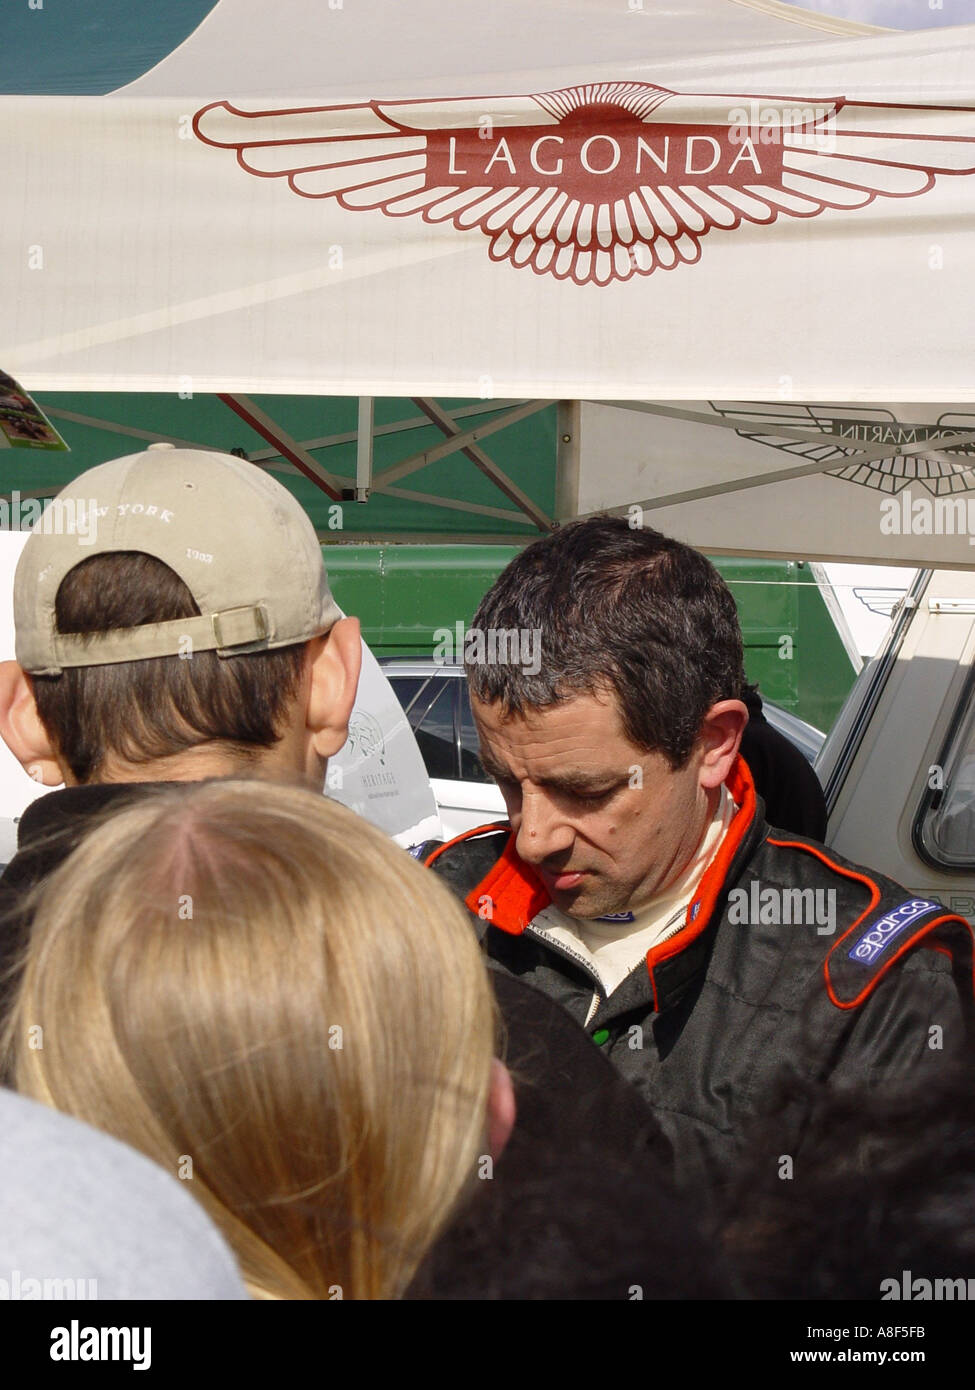 Rowan Atkinson de signer des autographes dans un circuit de course automobile Angleterre GO UK 2003 Banque D'Images